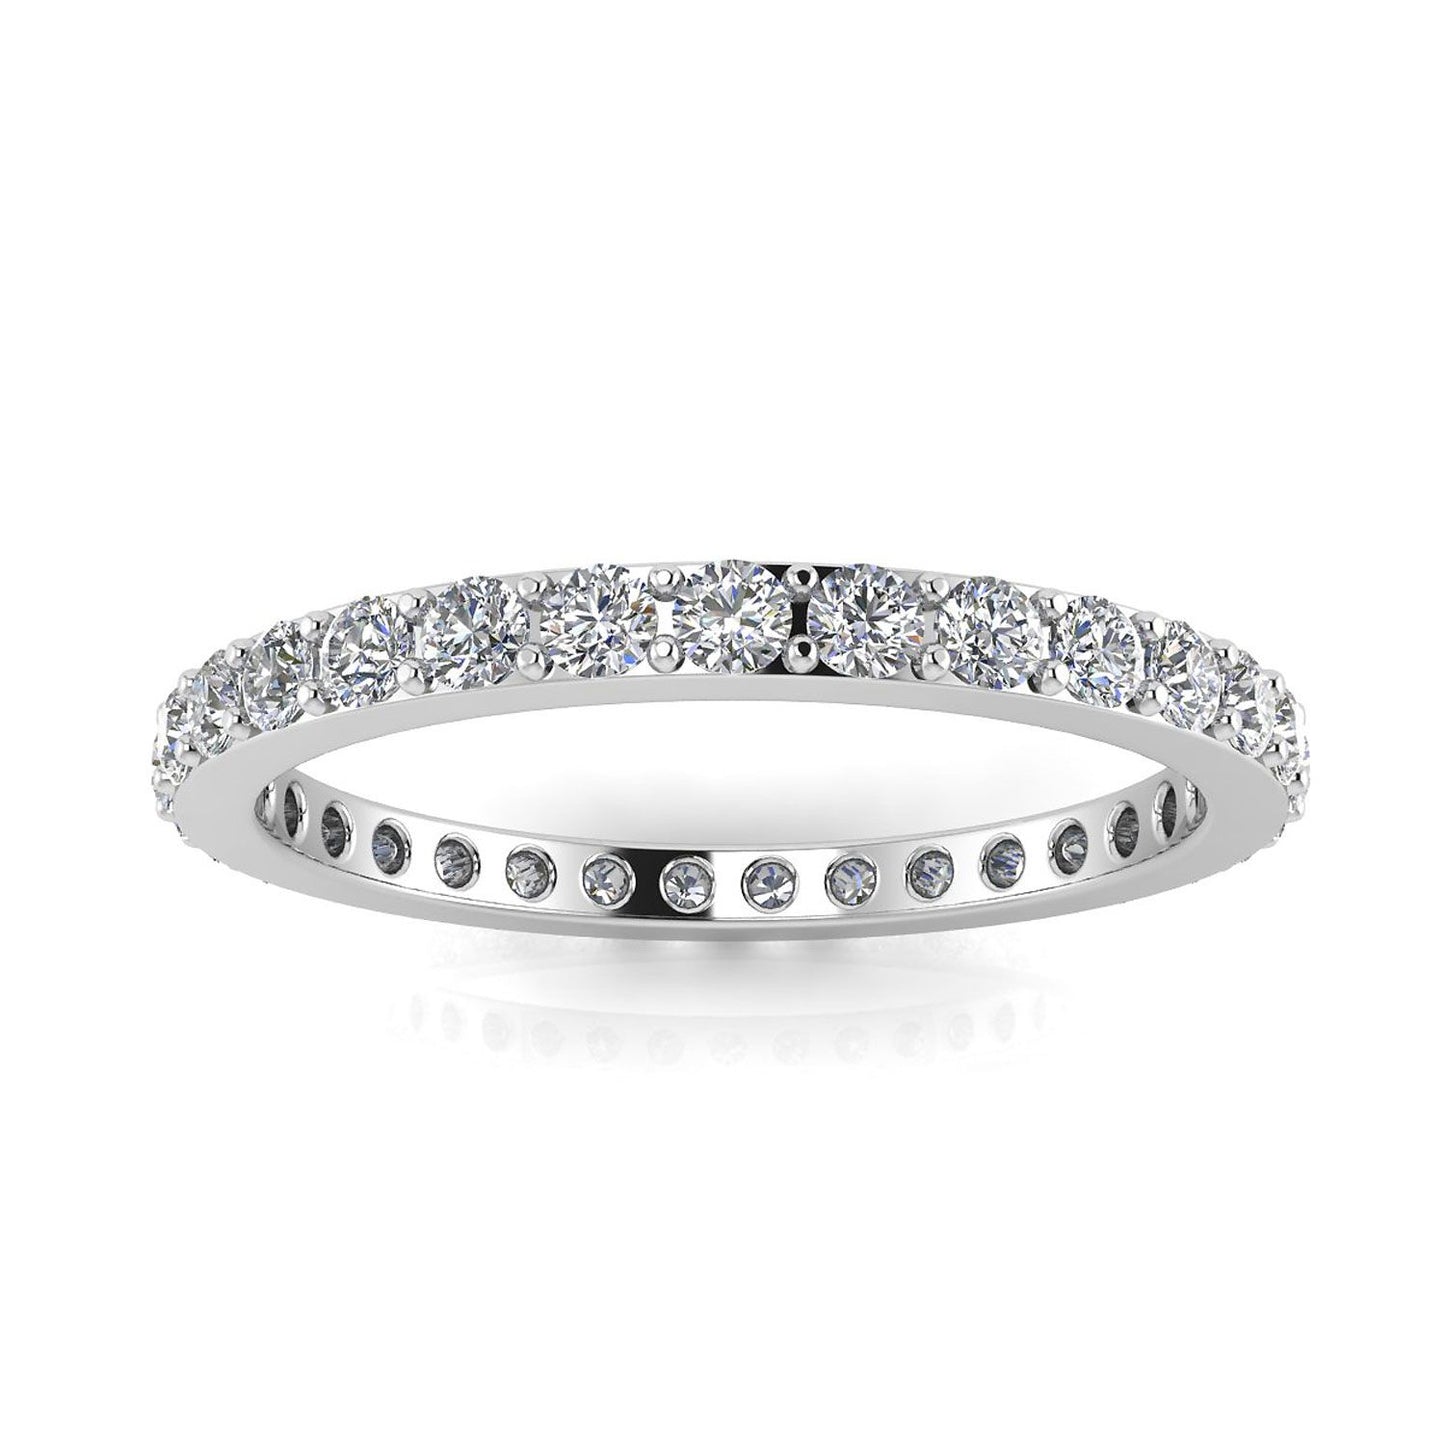 แหวนหมั้นเพชรเจียระไนทรงกลมทรงกลม Eternity Ring ทองคำขาว 18k (1.31 กะรัต) ขนาดแหวน 4